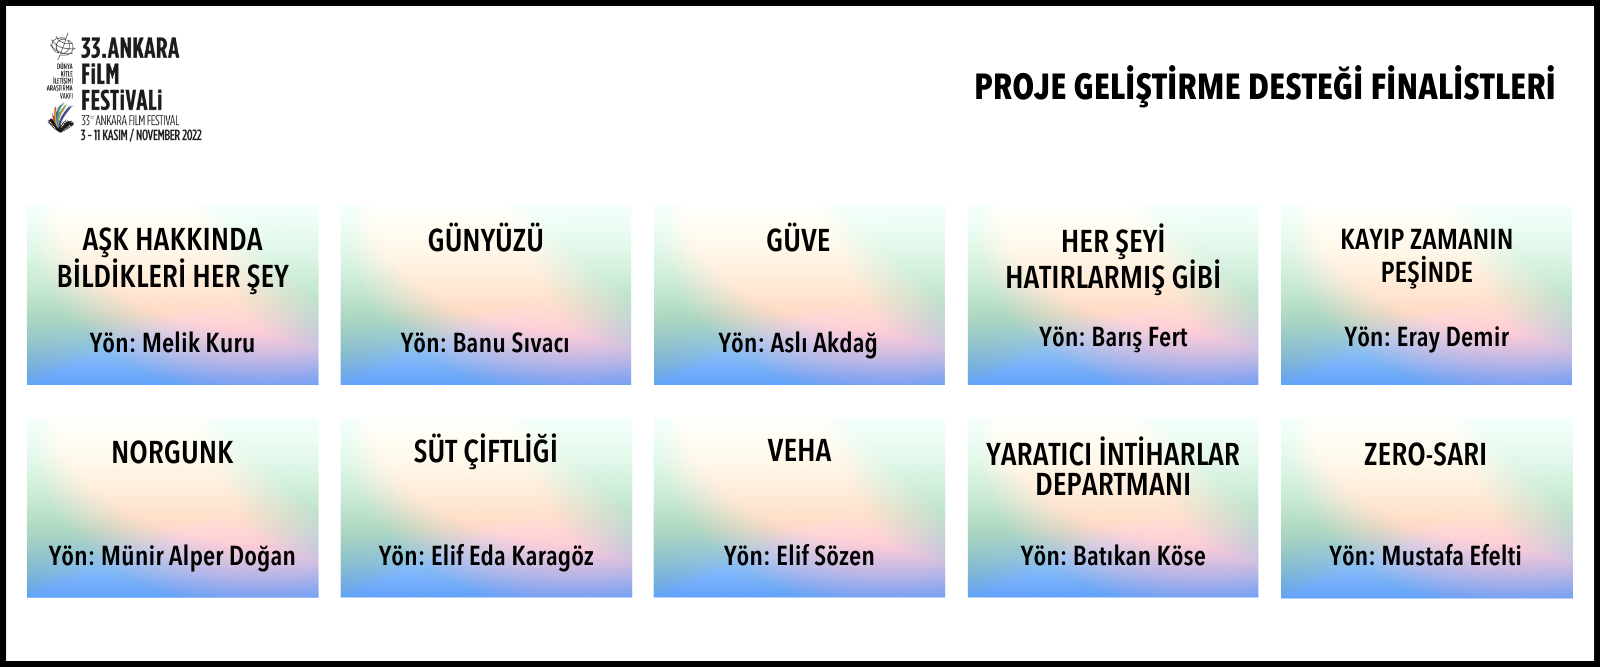 33. Ankara Fİlm Festivali'nde Yarışacak Ulusal Proje Geliştirme Desteği Finalistleri Belirlendi